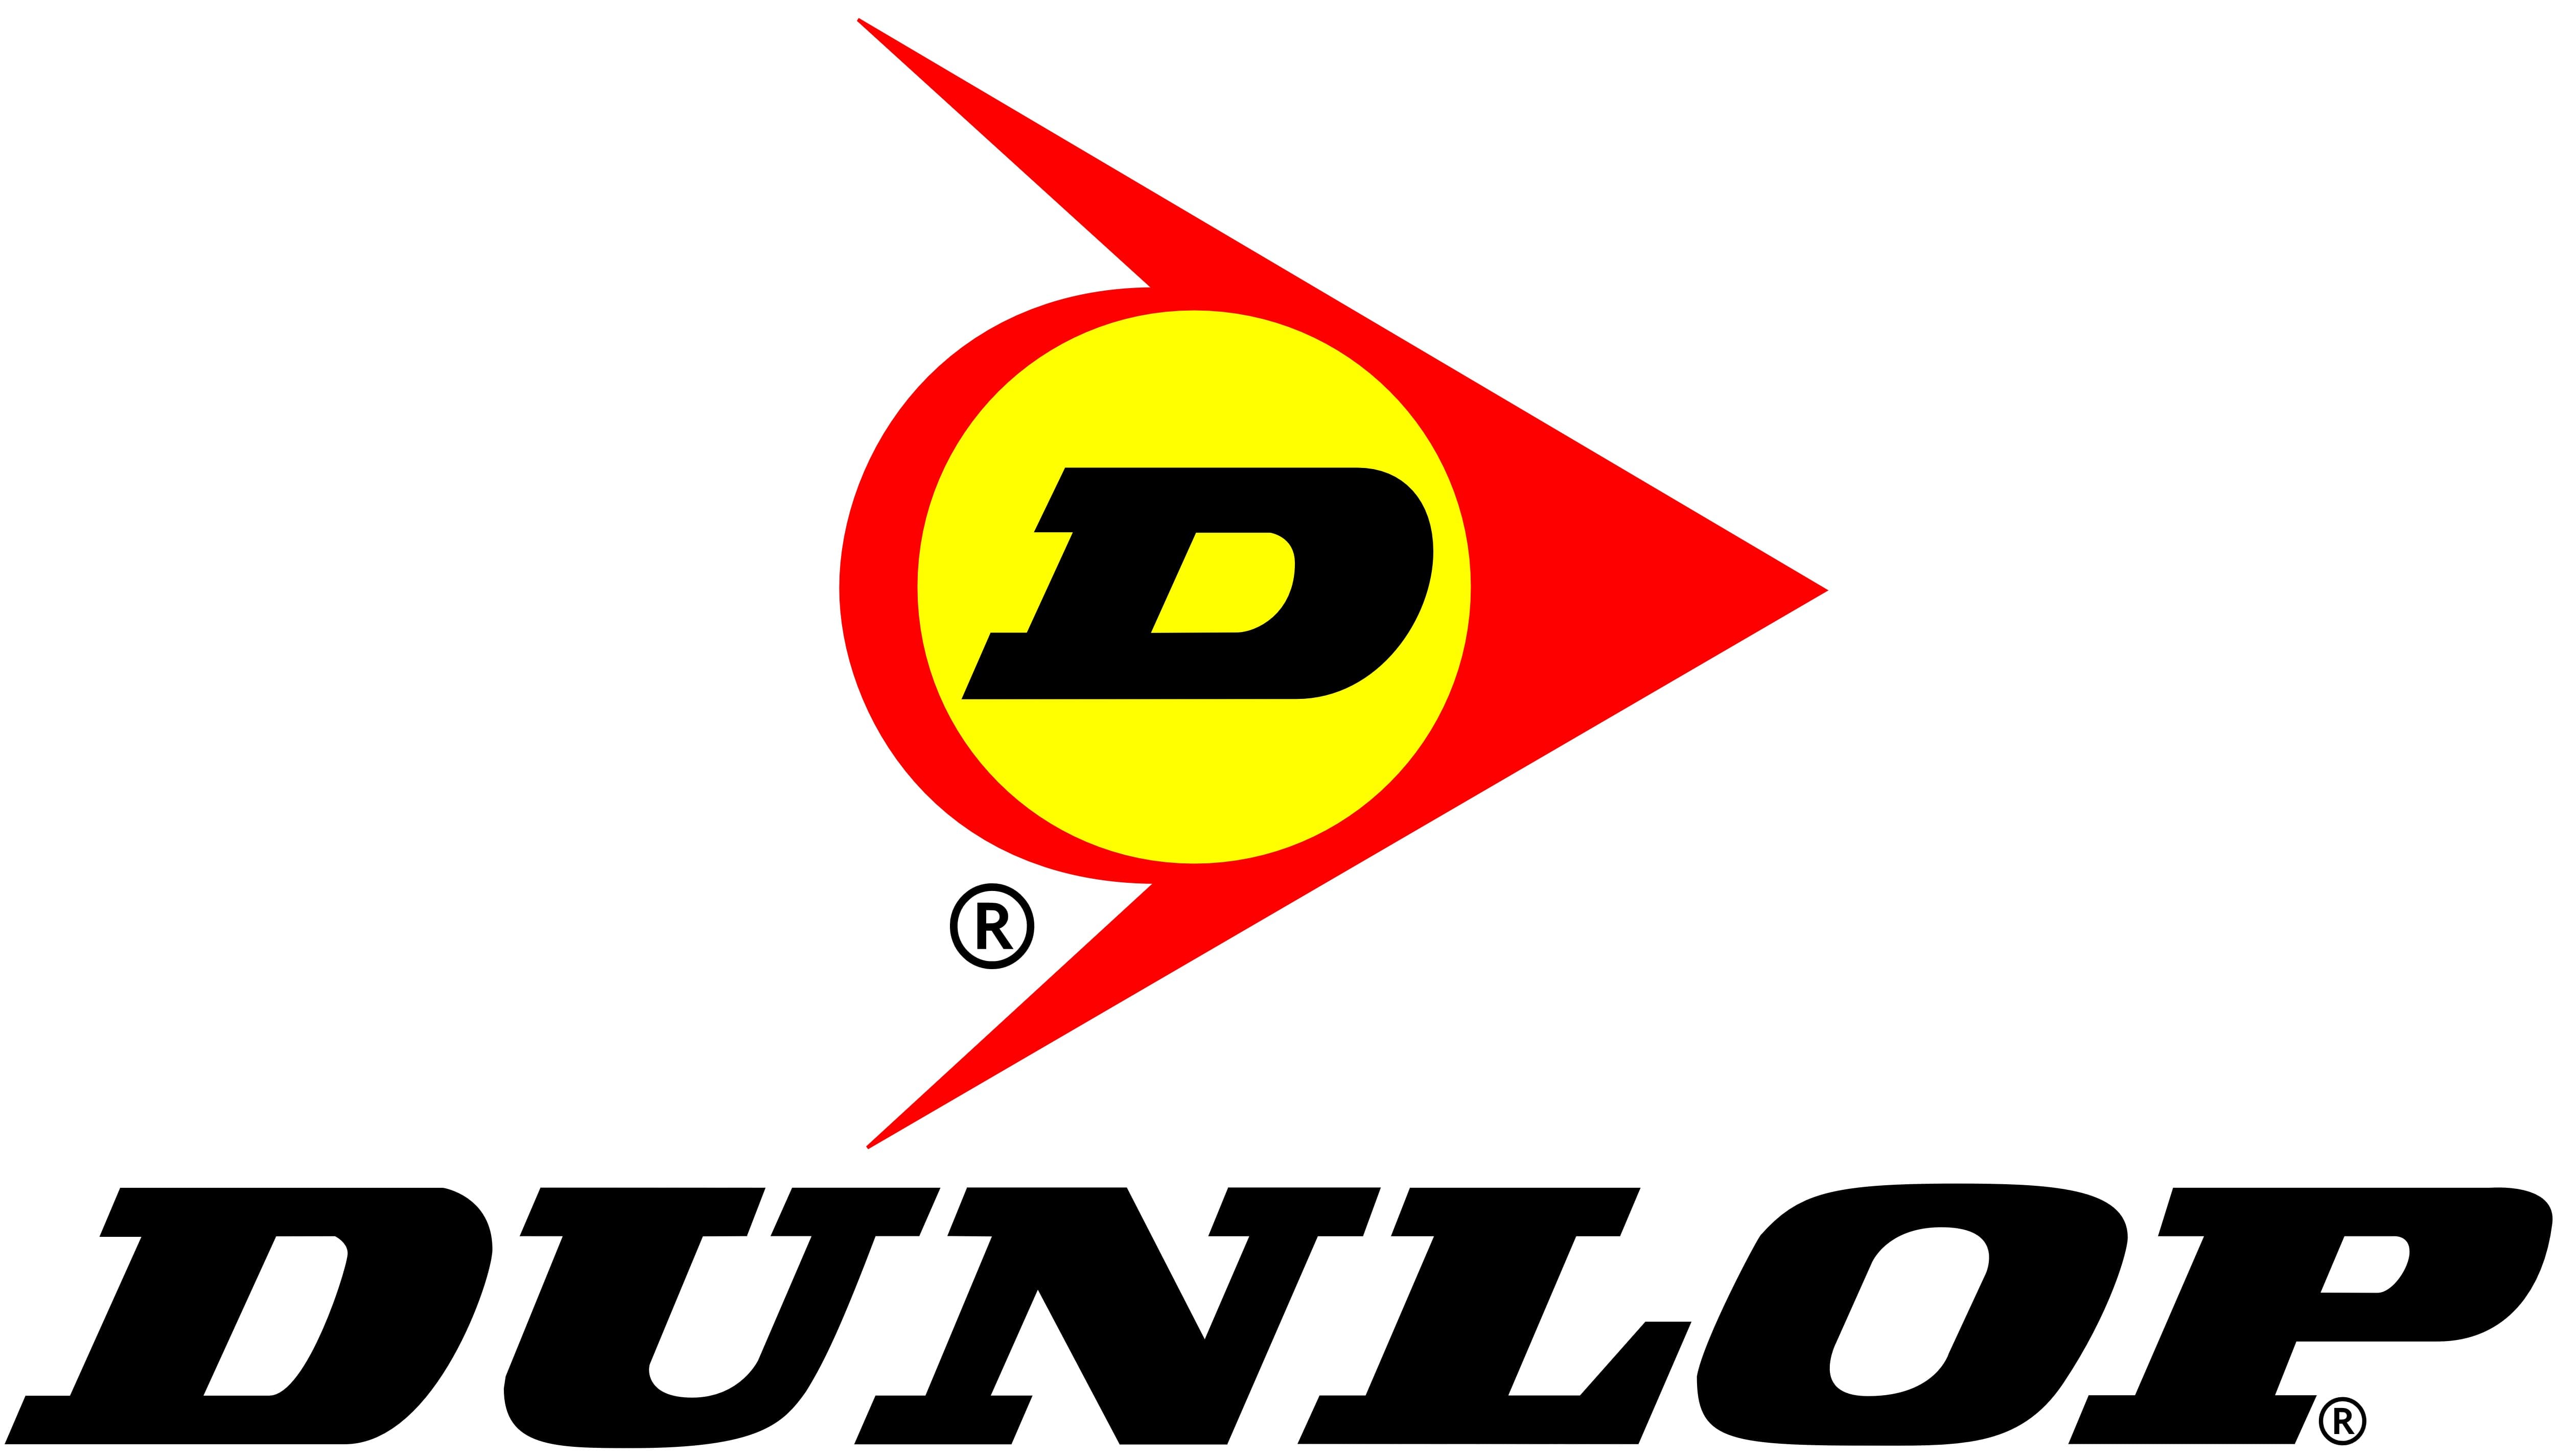 Dunlop Tennis